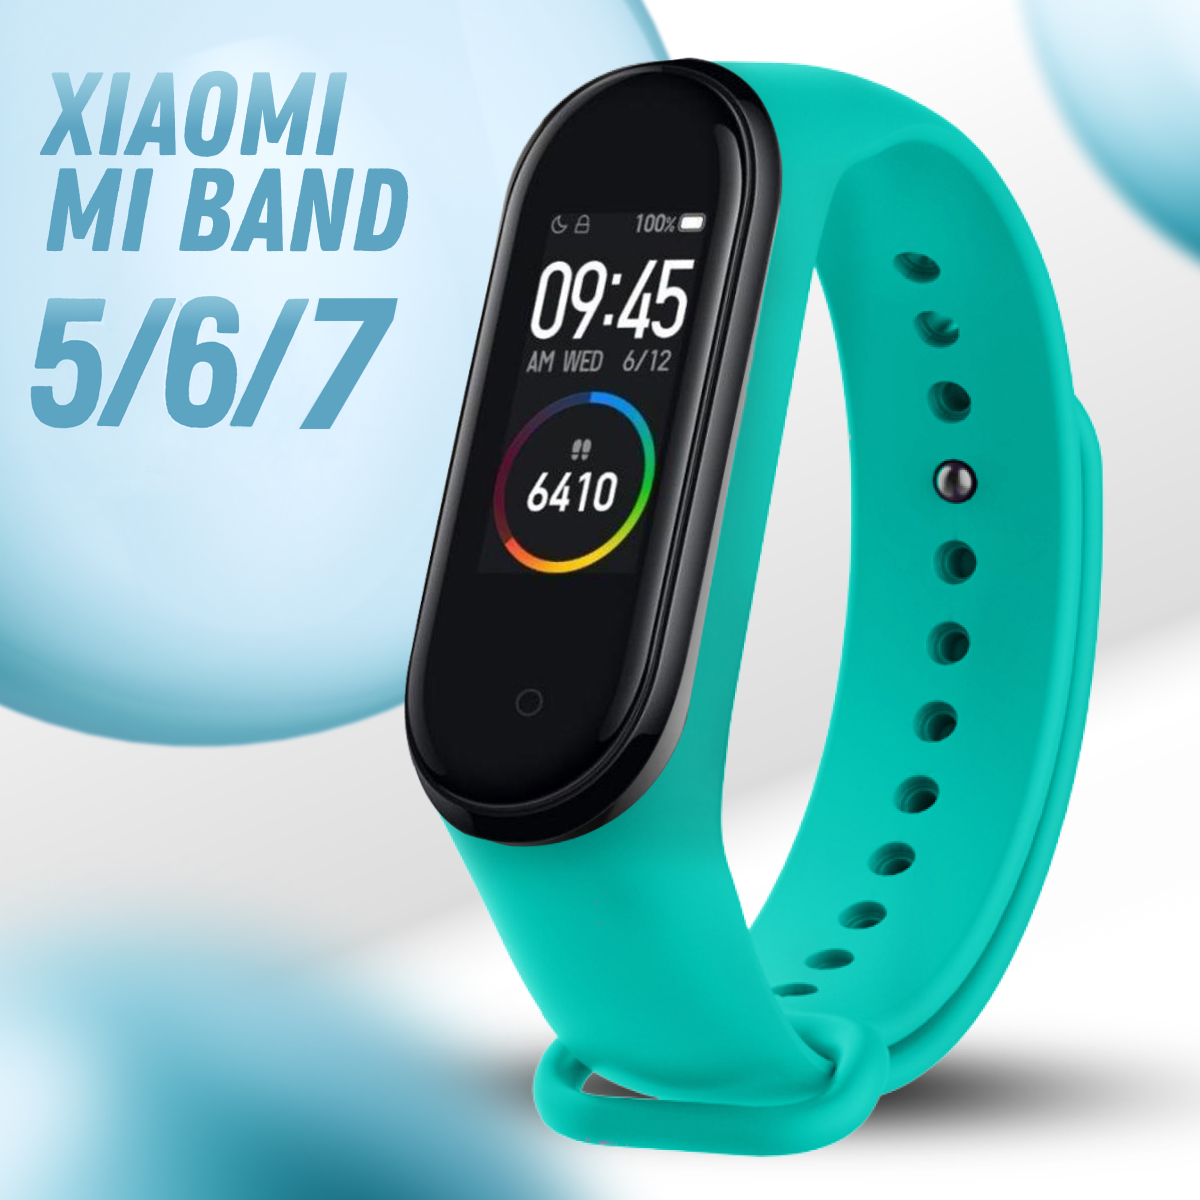 Силиконовый ремешок дляарт часов Xiaomi Mi Band 5 6 и 7 / Спортивныйенный браслет на фитнес трекер Сяоми Ми Бэнд 5 6 и 7 / Мятный